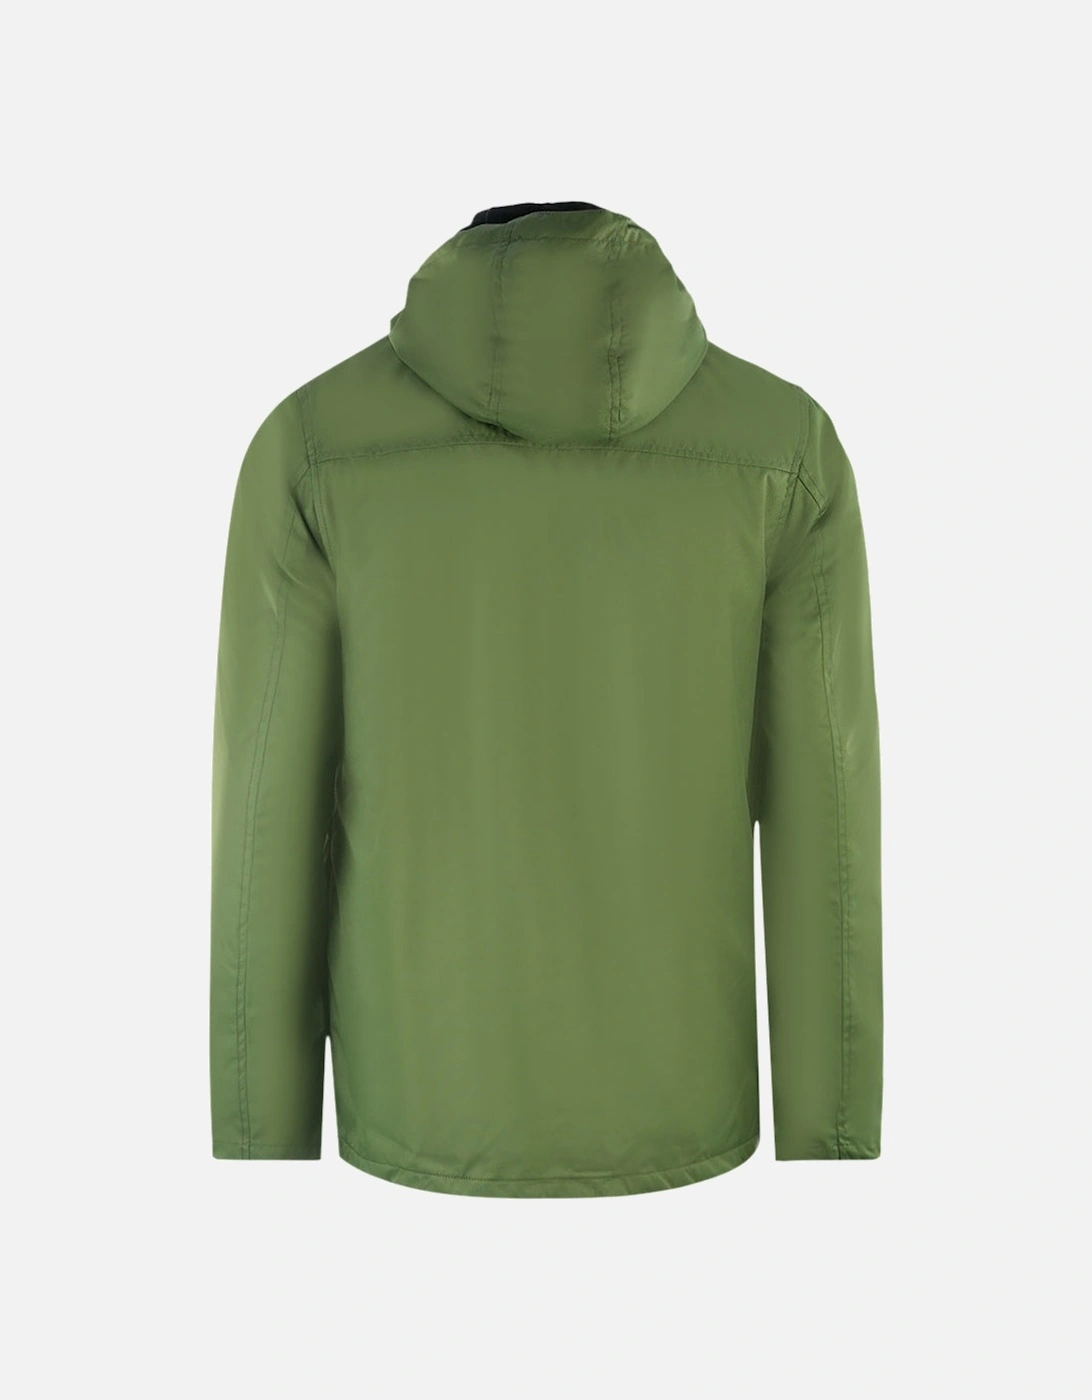 Lyle & Scott Micro Fleece Lined Green Jacket